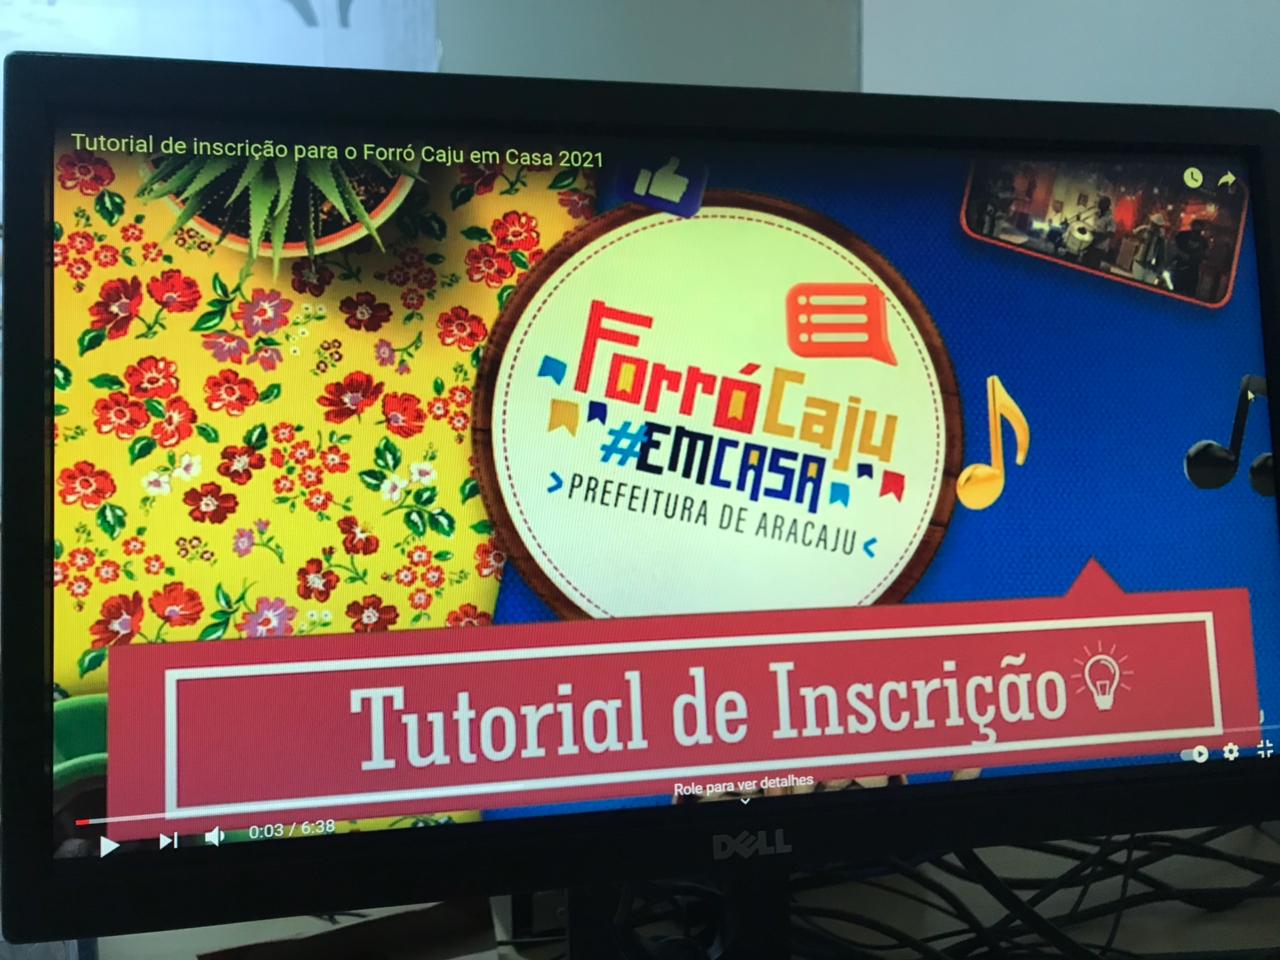 Forró Caju 2021: Funcaju lança tutorial para auxiliar artistas